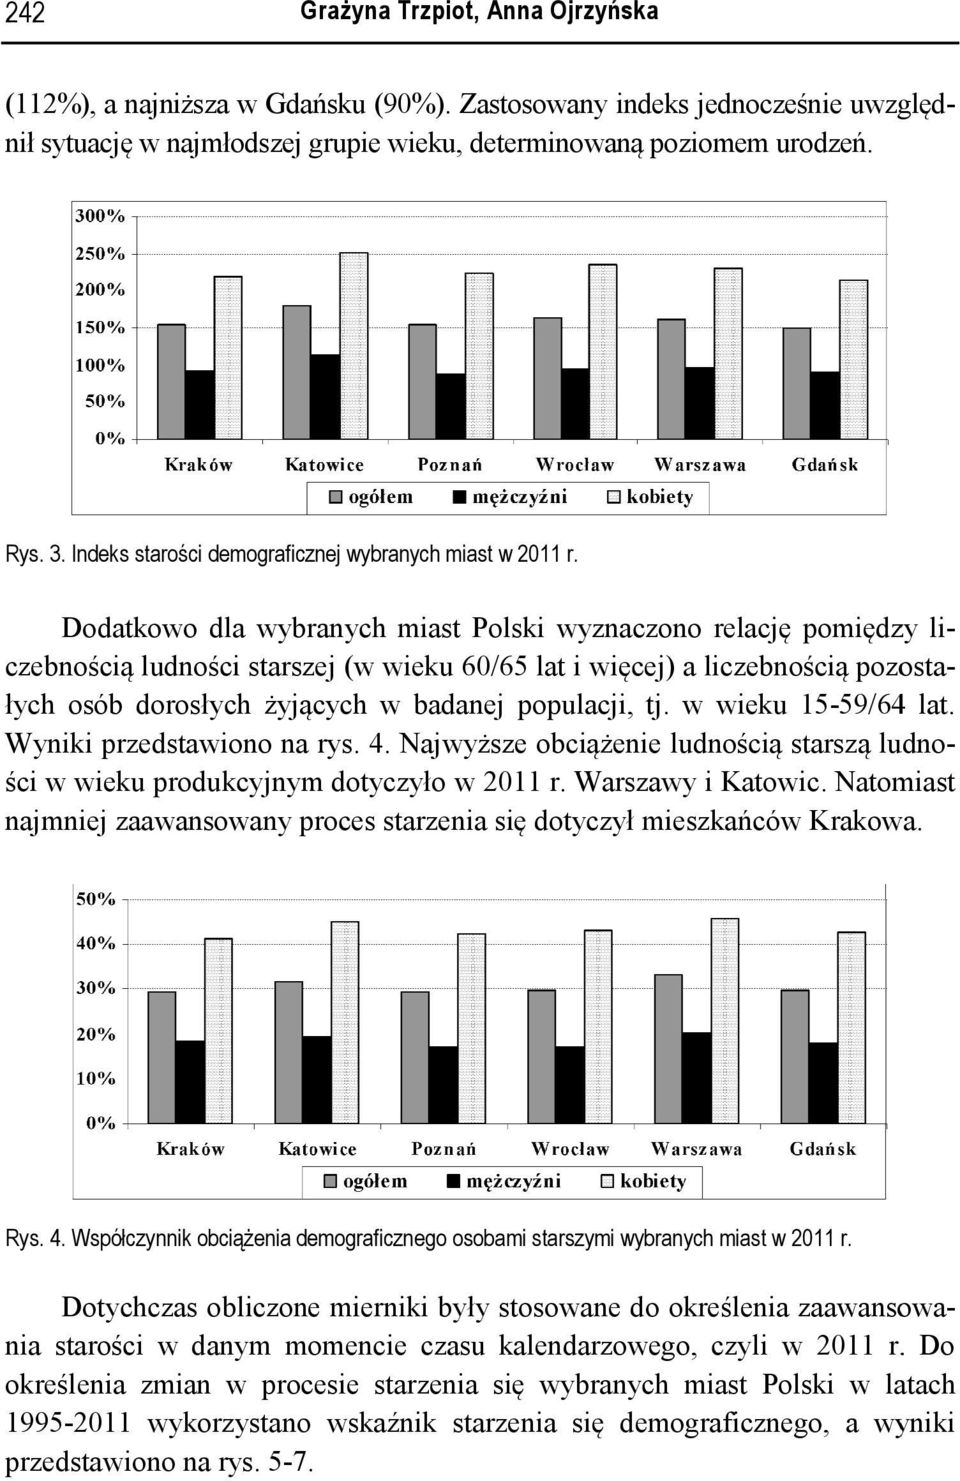 Dodatkowo dla wybranych miat Polki wyznaczono relację pomiędzy li- czebnością ludności tarzej (w wieku 60/65 lat i więcej) a liczebnością pozota- łych oób dorołych żyjących w badanej populacji, tj.